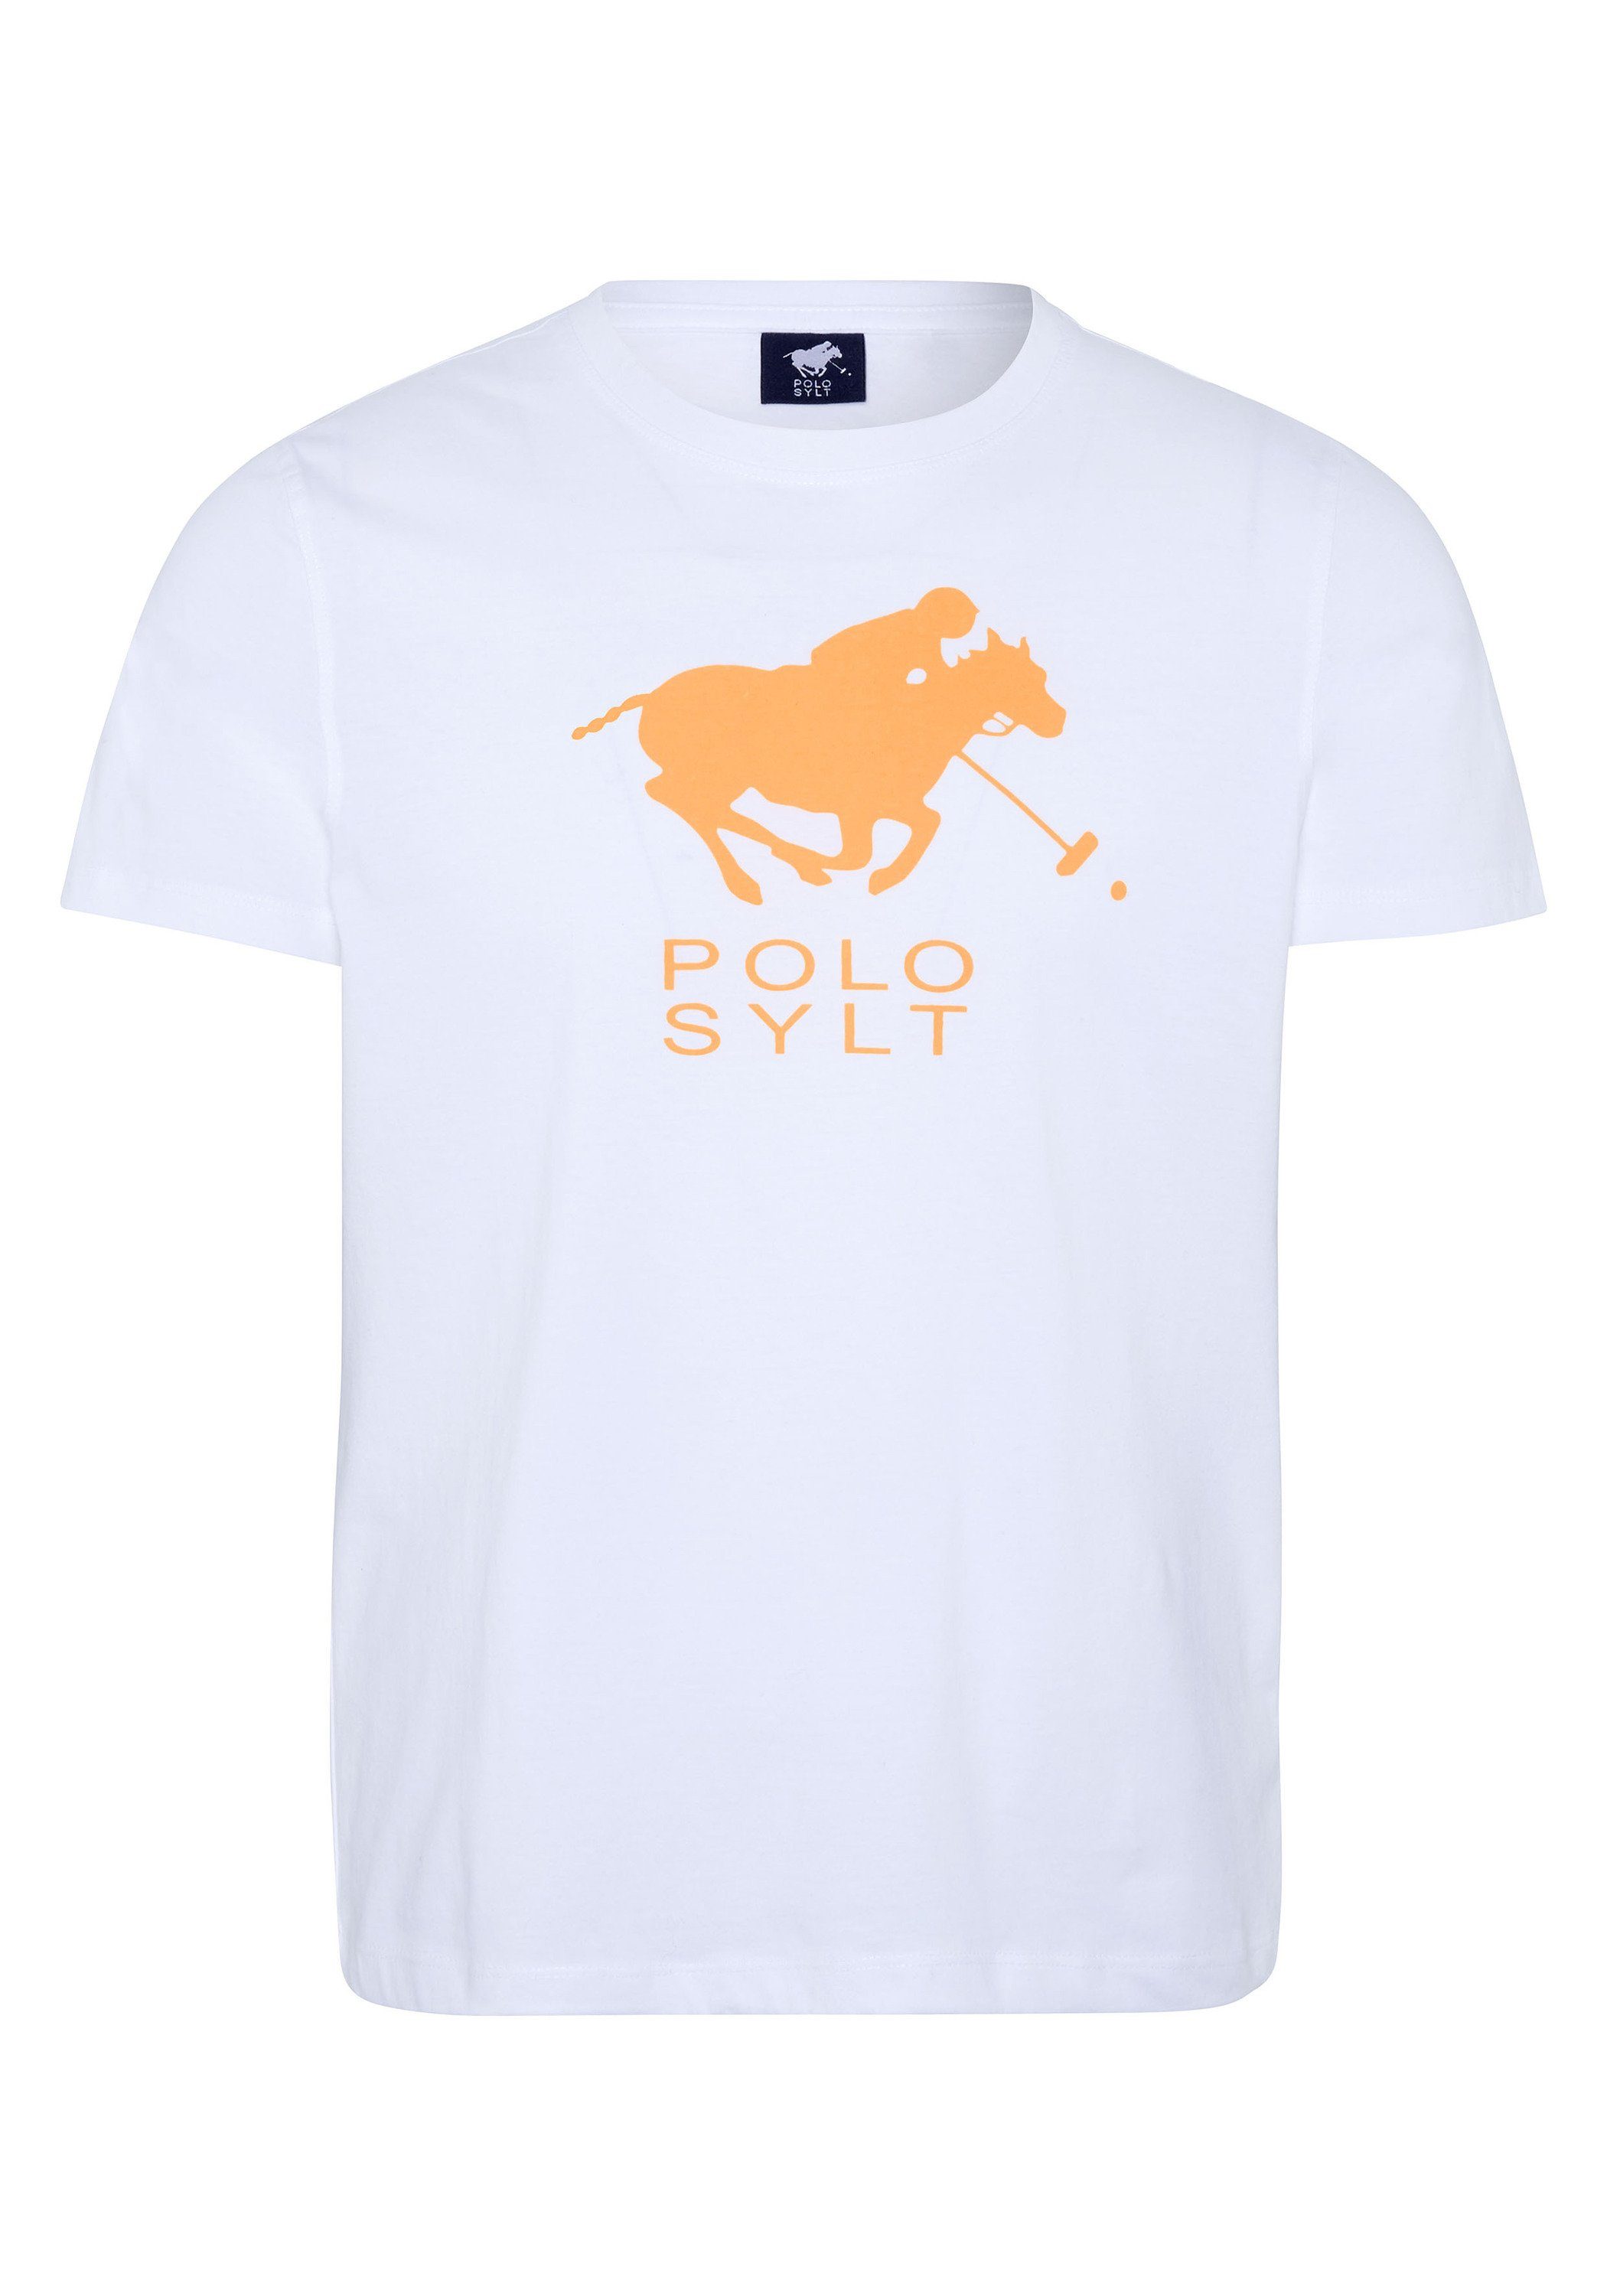 Polo Sylt Print-Shirt mit Neon Logo Frontprint Bright White